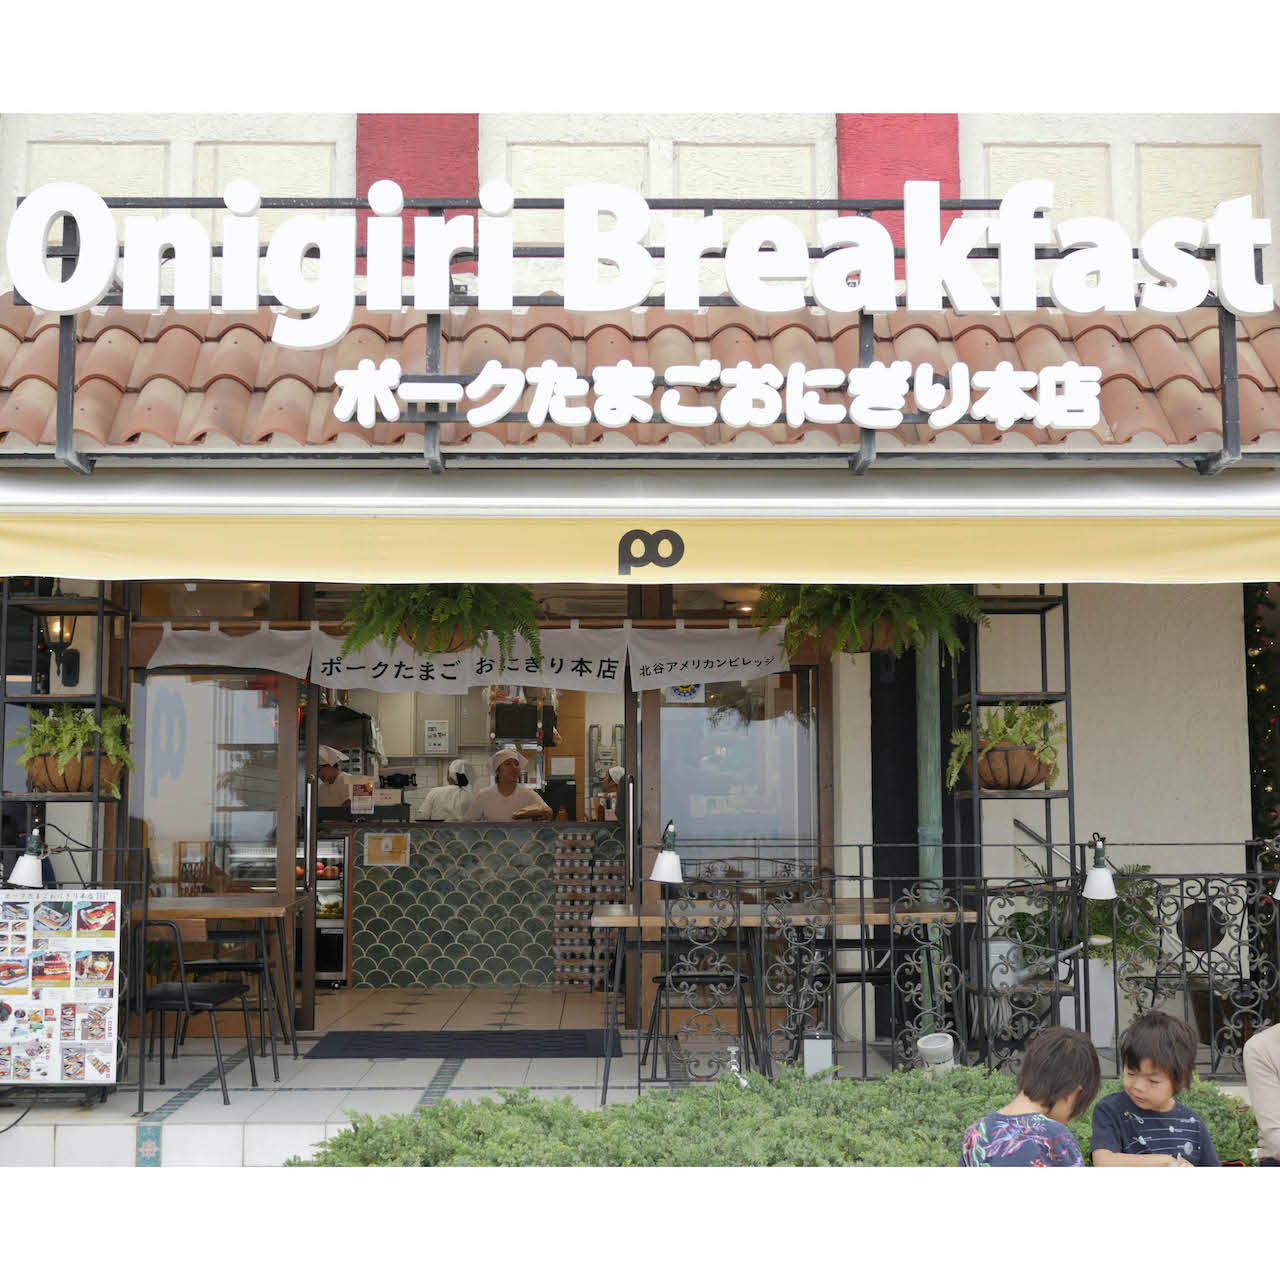 沖繩當地的特色早餐豬肉蛋飯糰